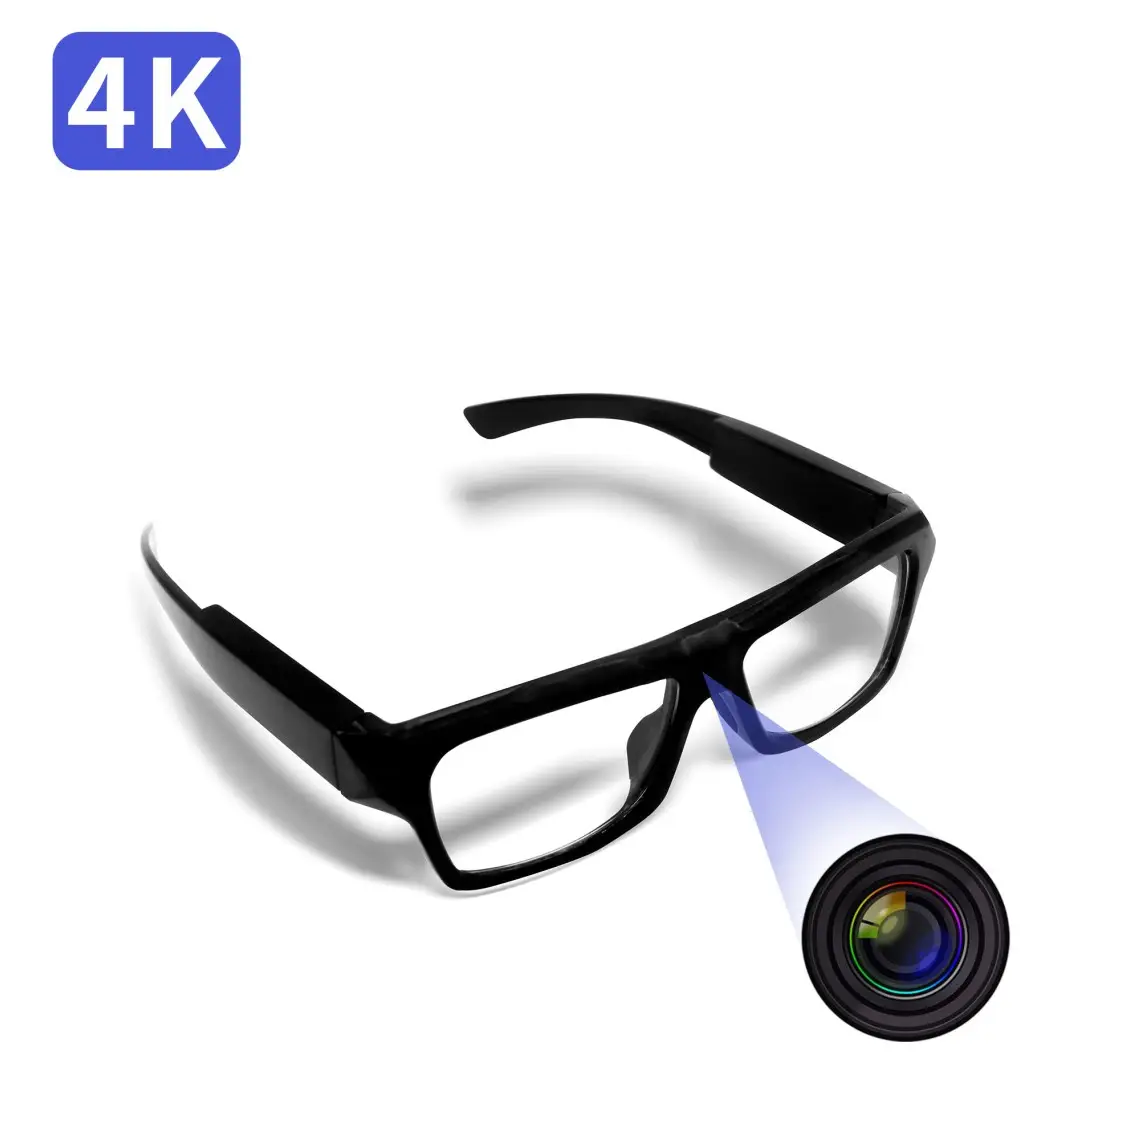 نظارات تسجيل الفيديو موديل 2021, حساس صورة عالية الدقة 4K بدقة 8 ميجا بكسل ، كاميرا تسجيل الفيديو ، نظارات مراقبة لأمن المنزل والعمل